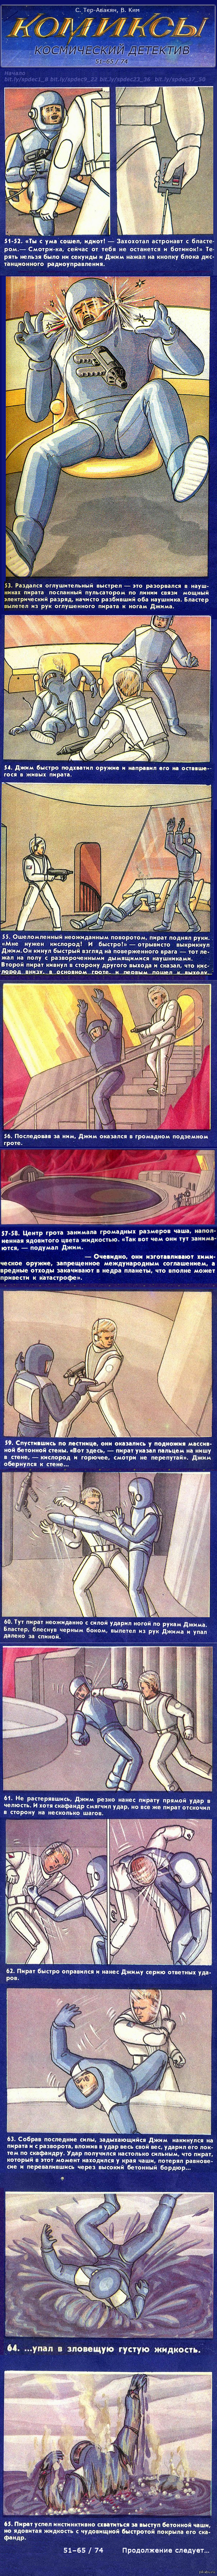 Космический детектив (Кадры 51–65 из 74) Начало комикса тут <a href="http://pikabu.ru/story/kosmicheskiy_detektiv_kadryi_18_iz_74_2657145">http://pikabu.ru/story/_2657145</a> Ссылки на продолжение – в комментах по мере загрузки.